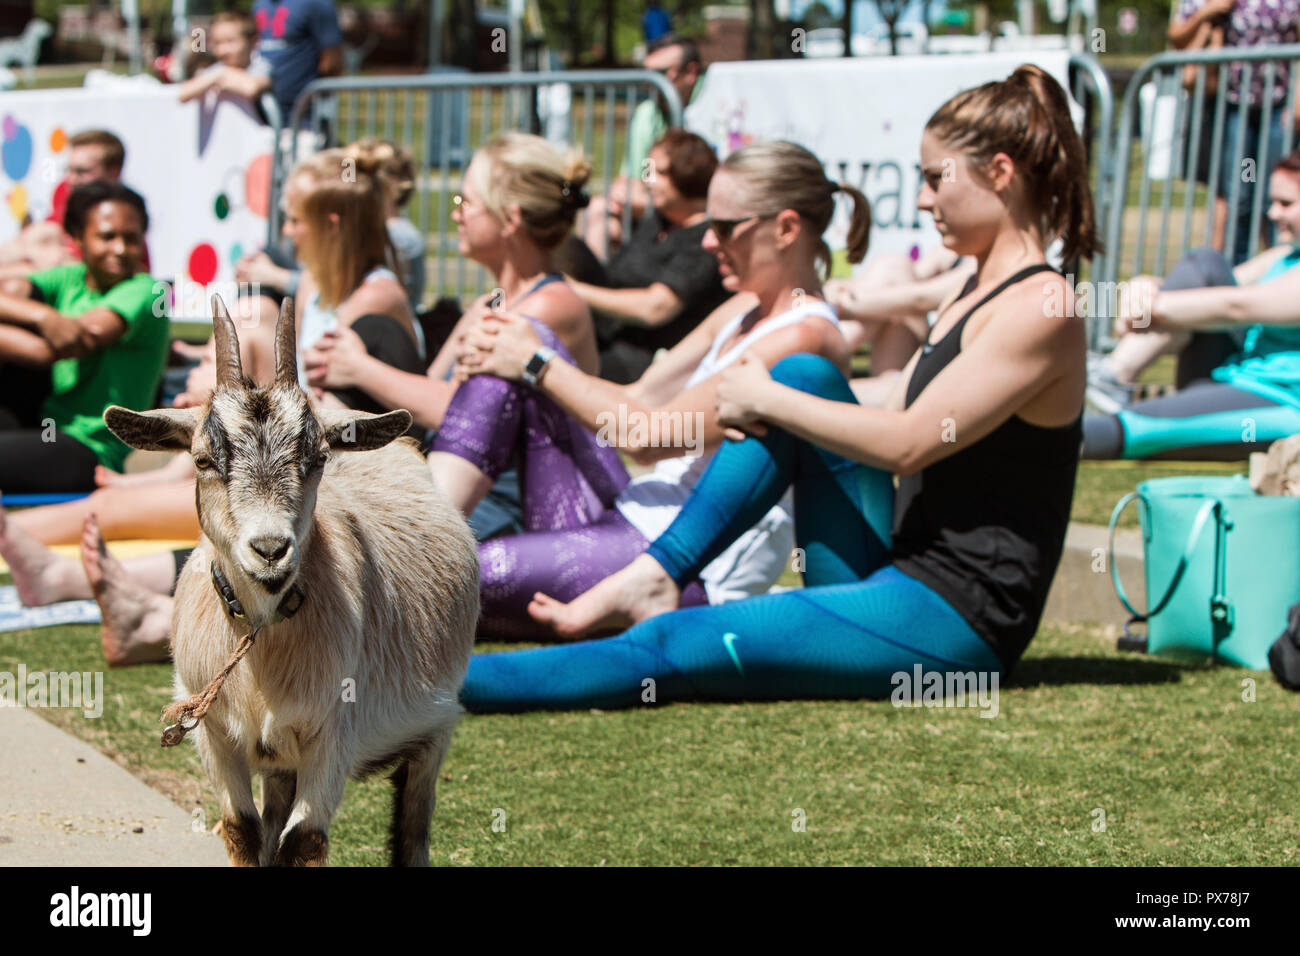 Suwanee, GA, USA - Le 29 avril 2018 : une chèvre est parmi les femmes qui s'étend dans une chèvre à un événement yoga parc public le 29 avril 2018 à Suwanee, GA. Banque D'Images